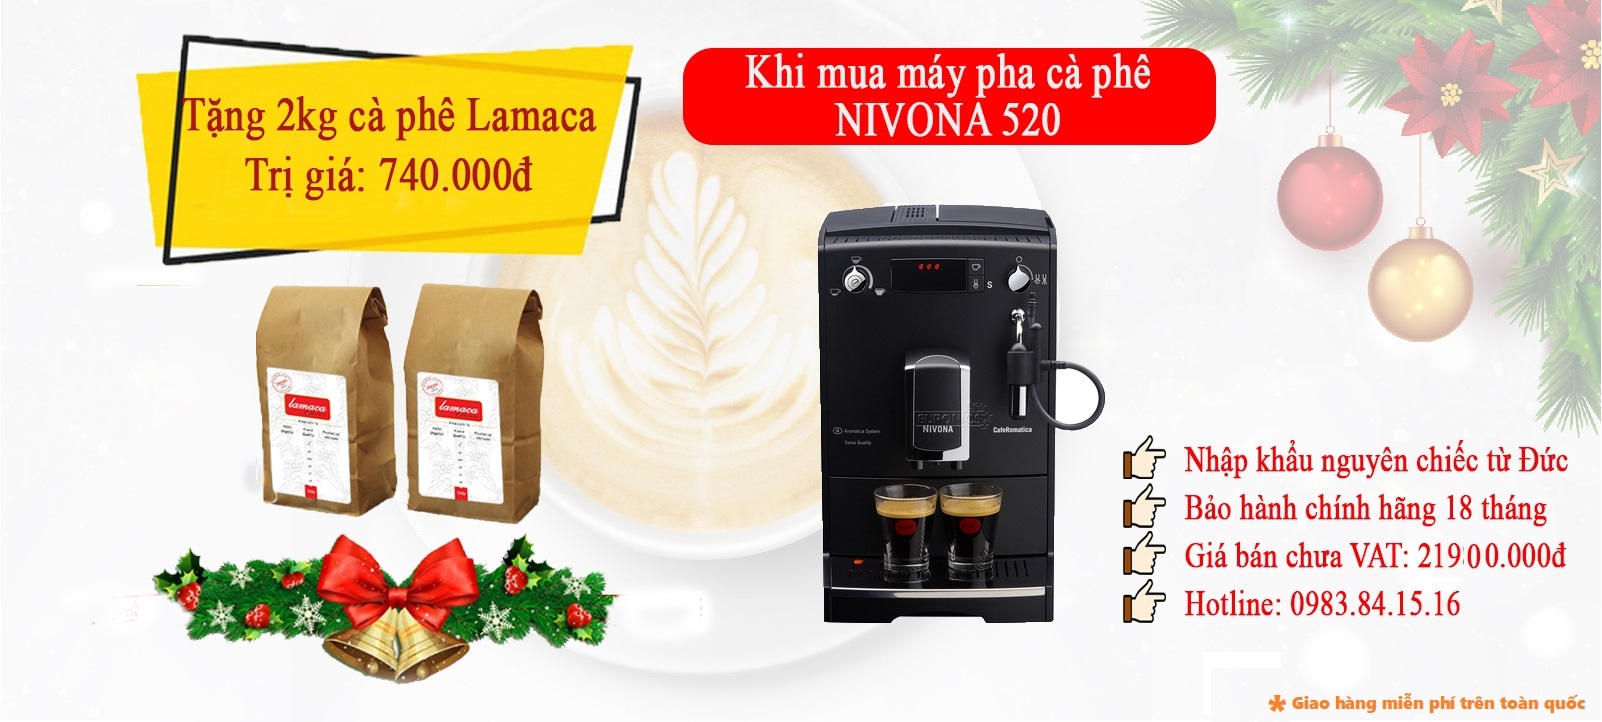 Máy cafe Nivona 520